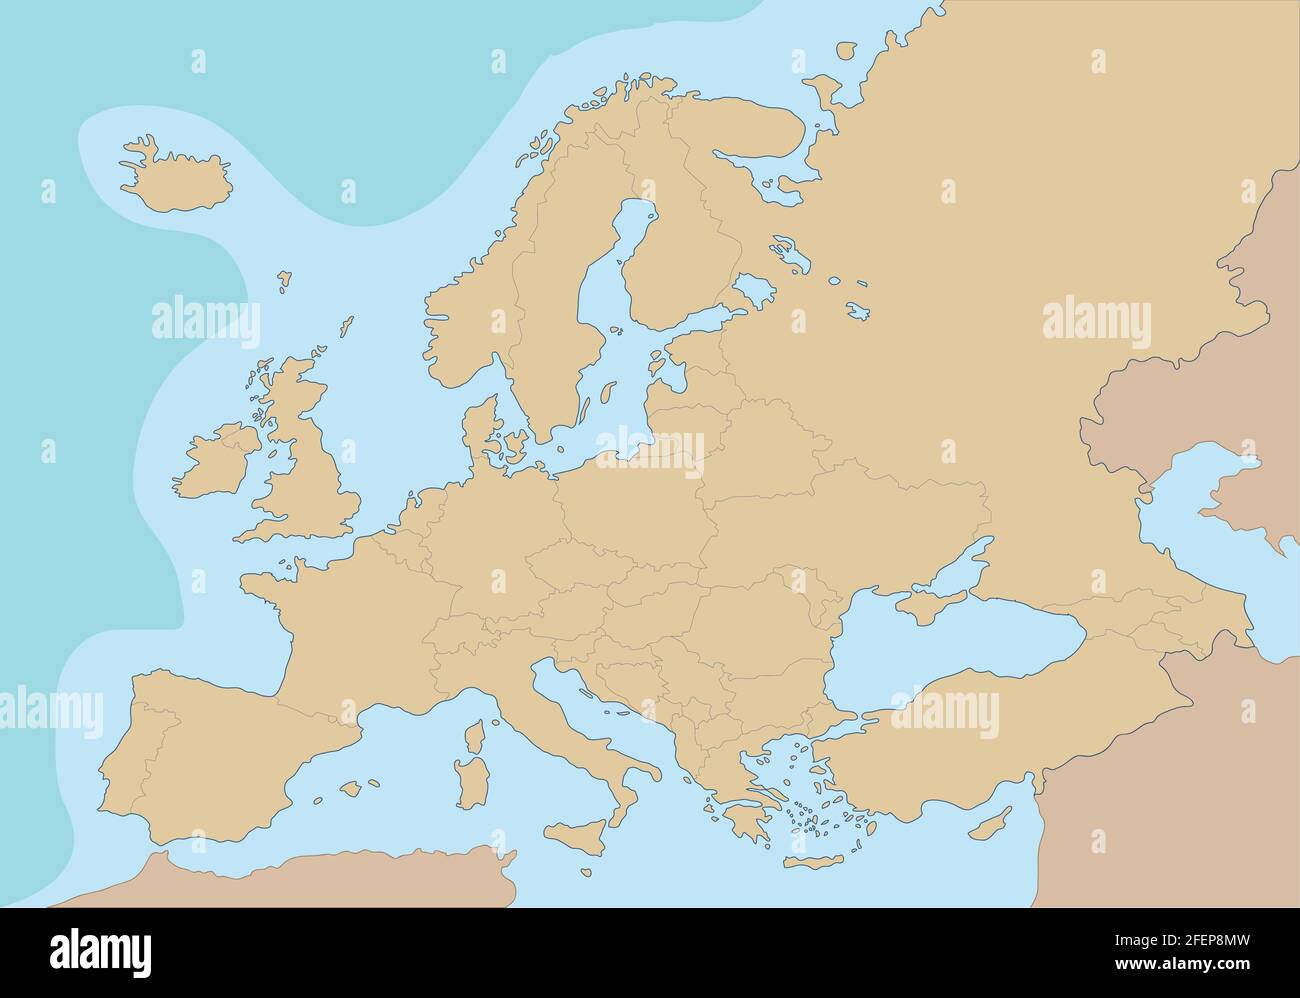 Carte politique de l'Europe Illustration du vecteur Illustration de Vecteur